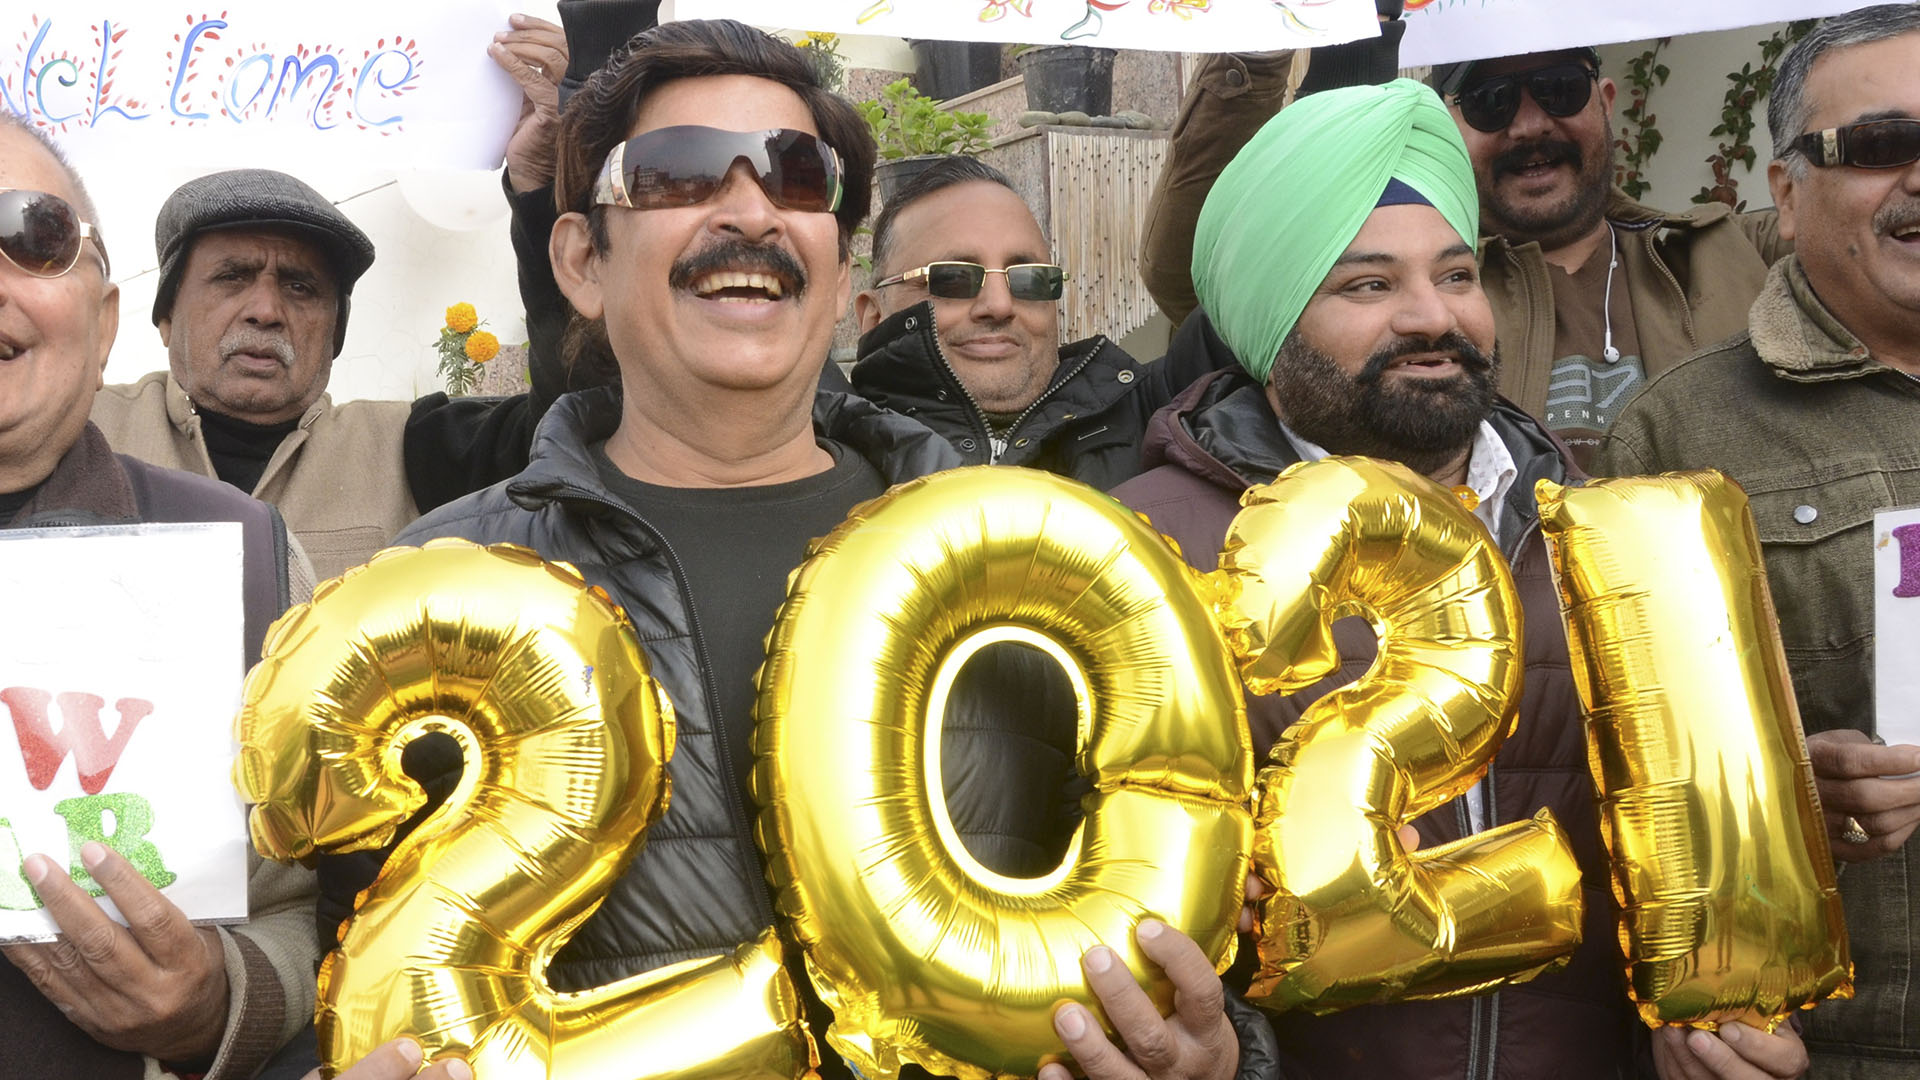 La gente sostiene pancartas y globos que forman el número 2021 durante las celebraciones del Año Nuevo en Amritsar, India (NARINDER NANU/ AFP)